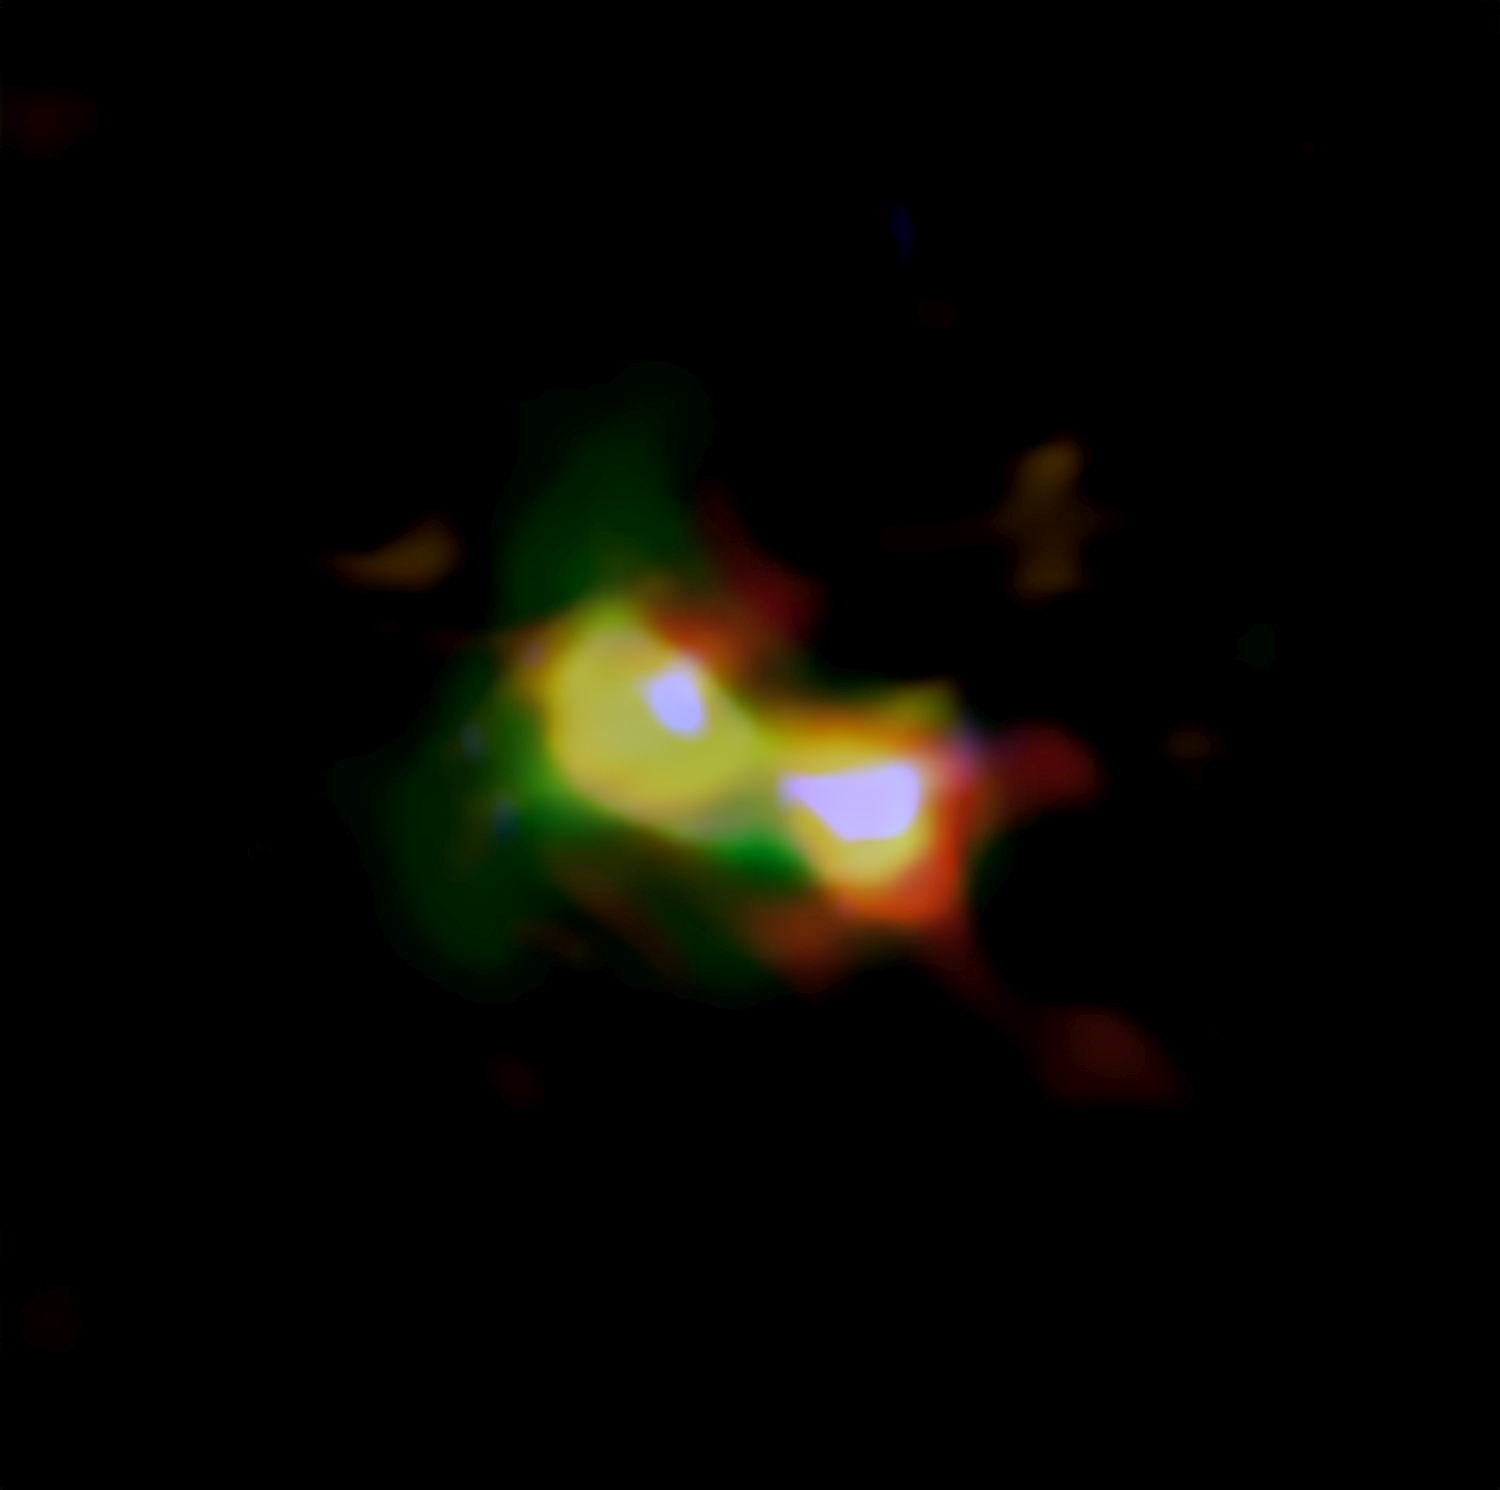 <p>Imagen compuesta de B14-65666 donde se aprecia la distribución del polvo (rojo), el oxígeno (verde) y el carbono (azul) observados por ALMA y las estrellas (blanco) observadas por el telescopio espacial Hubble. Créditos: ALMA (ESO/NAOJ/NRAO), telescopio espacial Hubble NASA/ESA, Hashimoto et al.</p>
